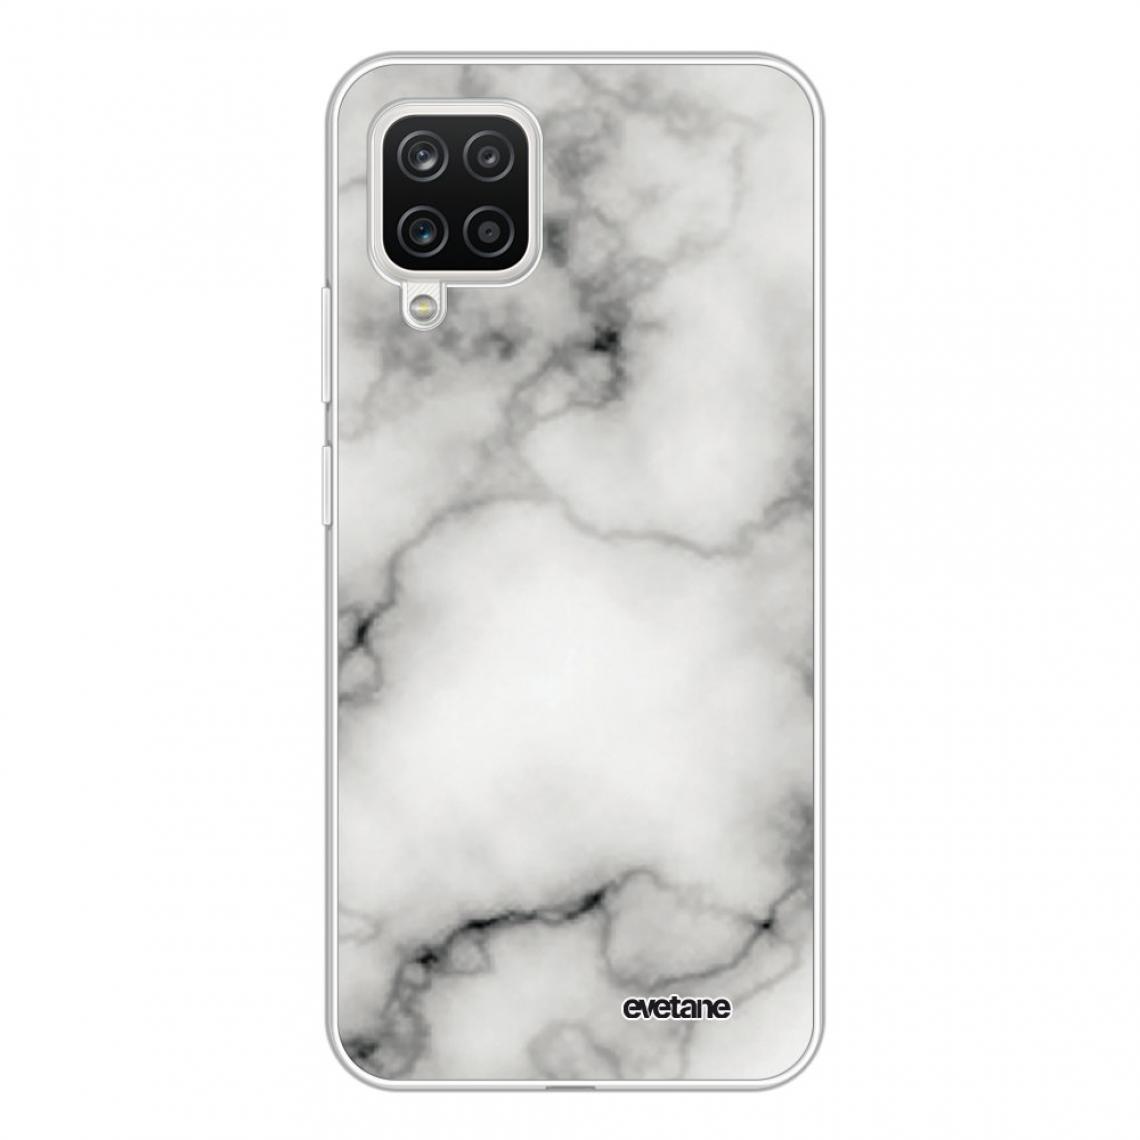 Evetane - Coque Samsung Galaxy A12 souple silicone transparente - Coque, étui smartphone